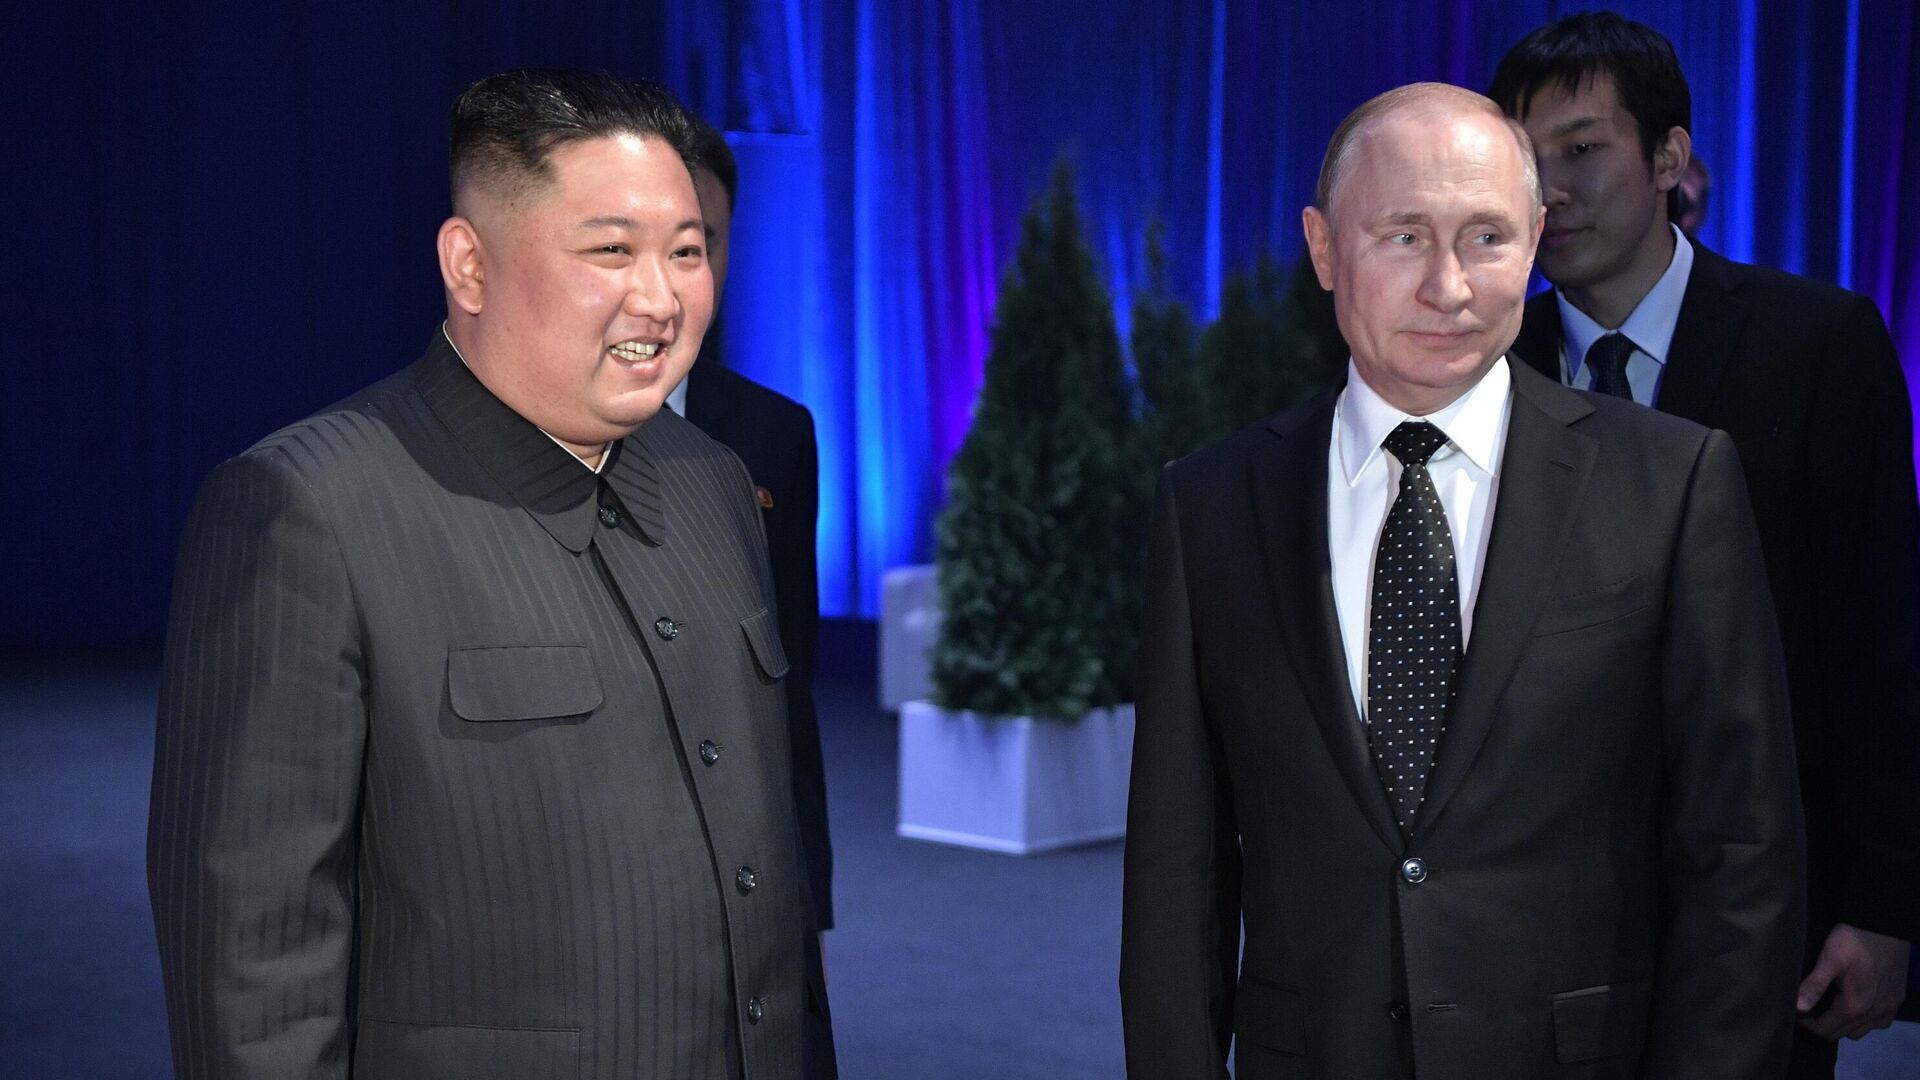 بوتين مع زعيم كوريا الشمالية